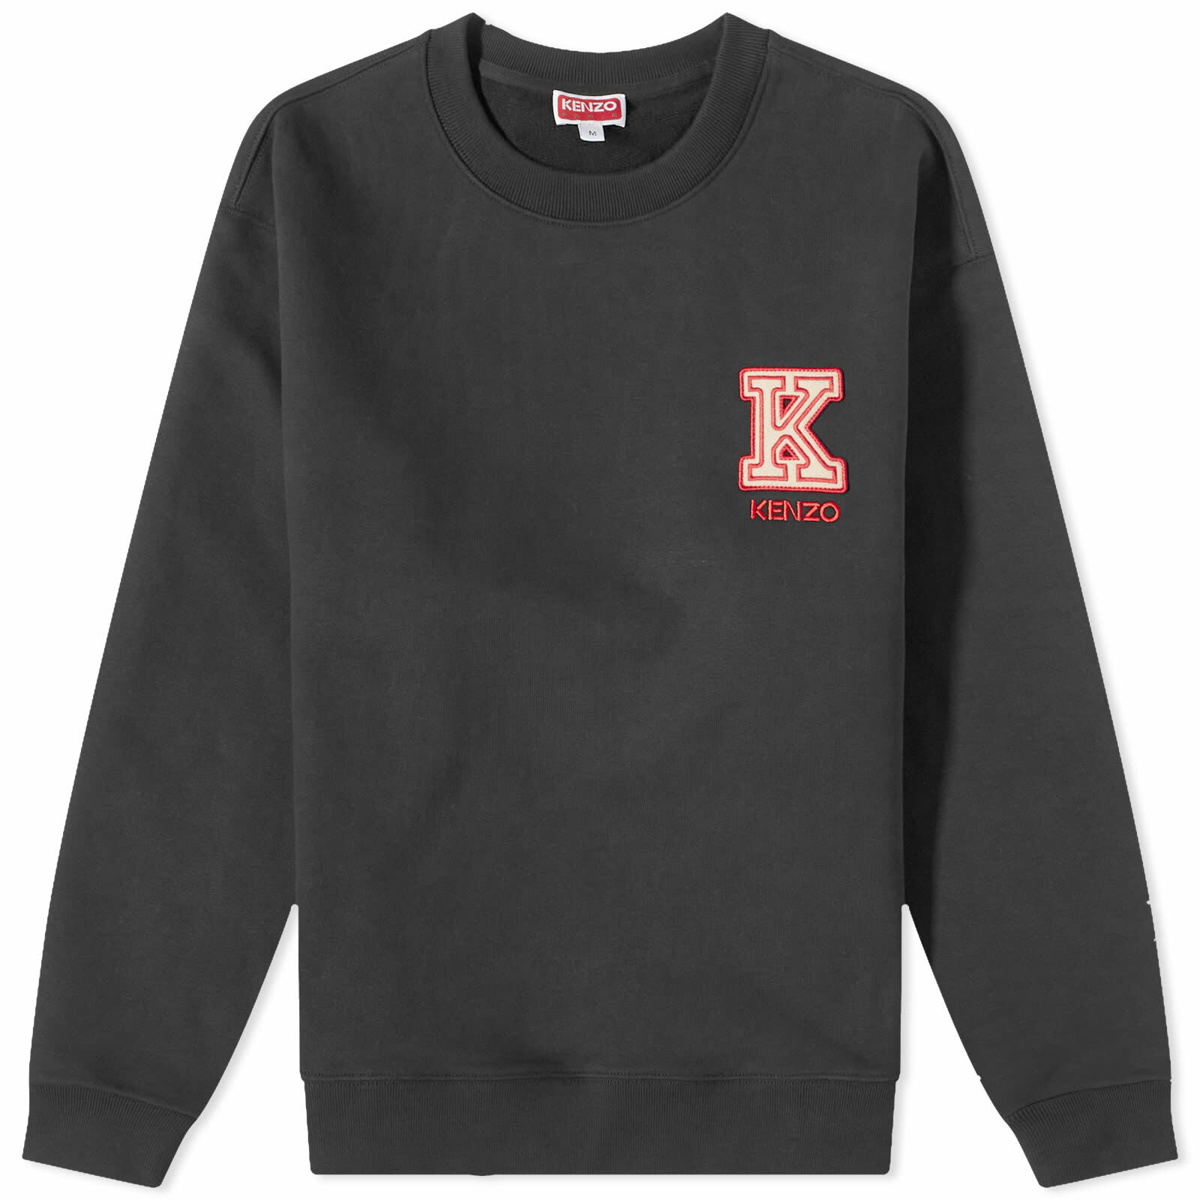 Kenzo Tiger Intarsia Sweater 6C 1986